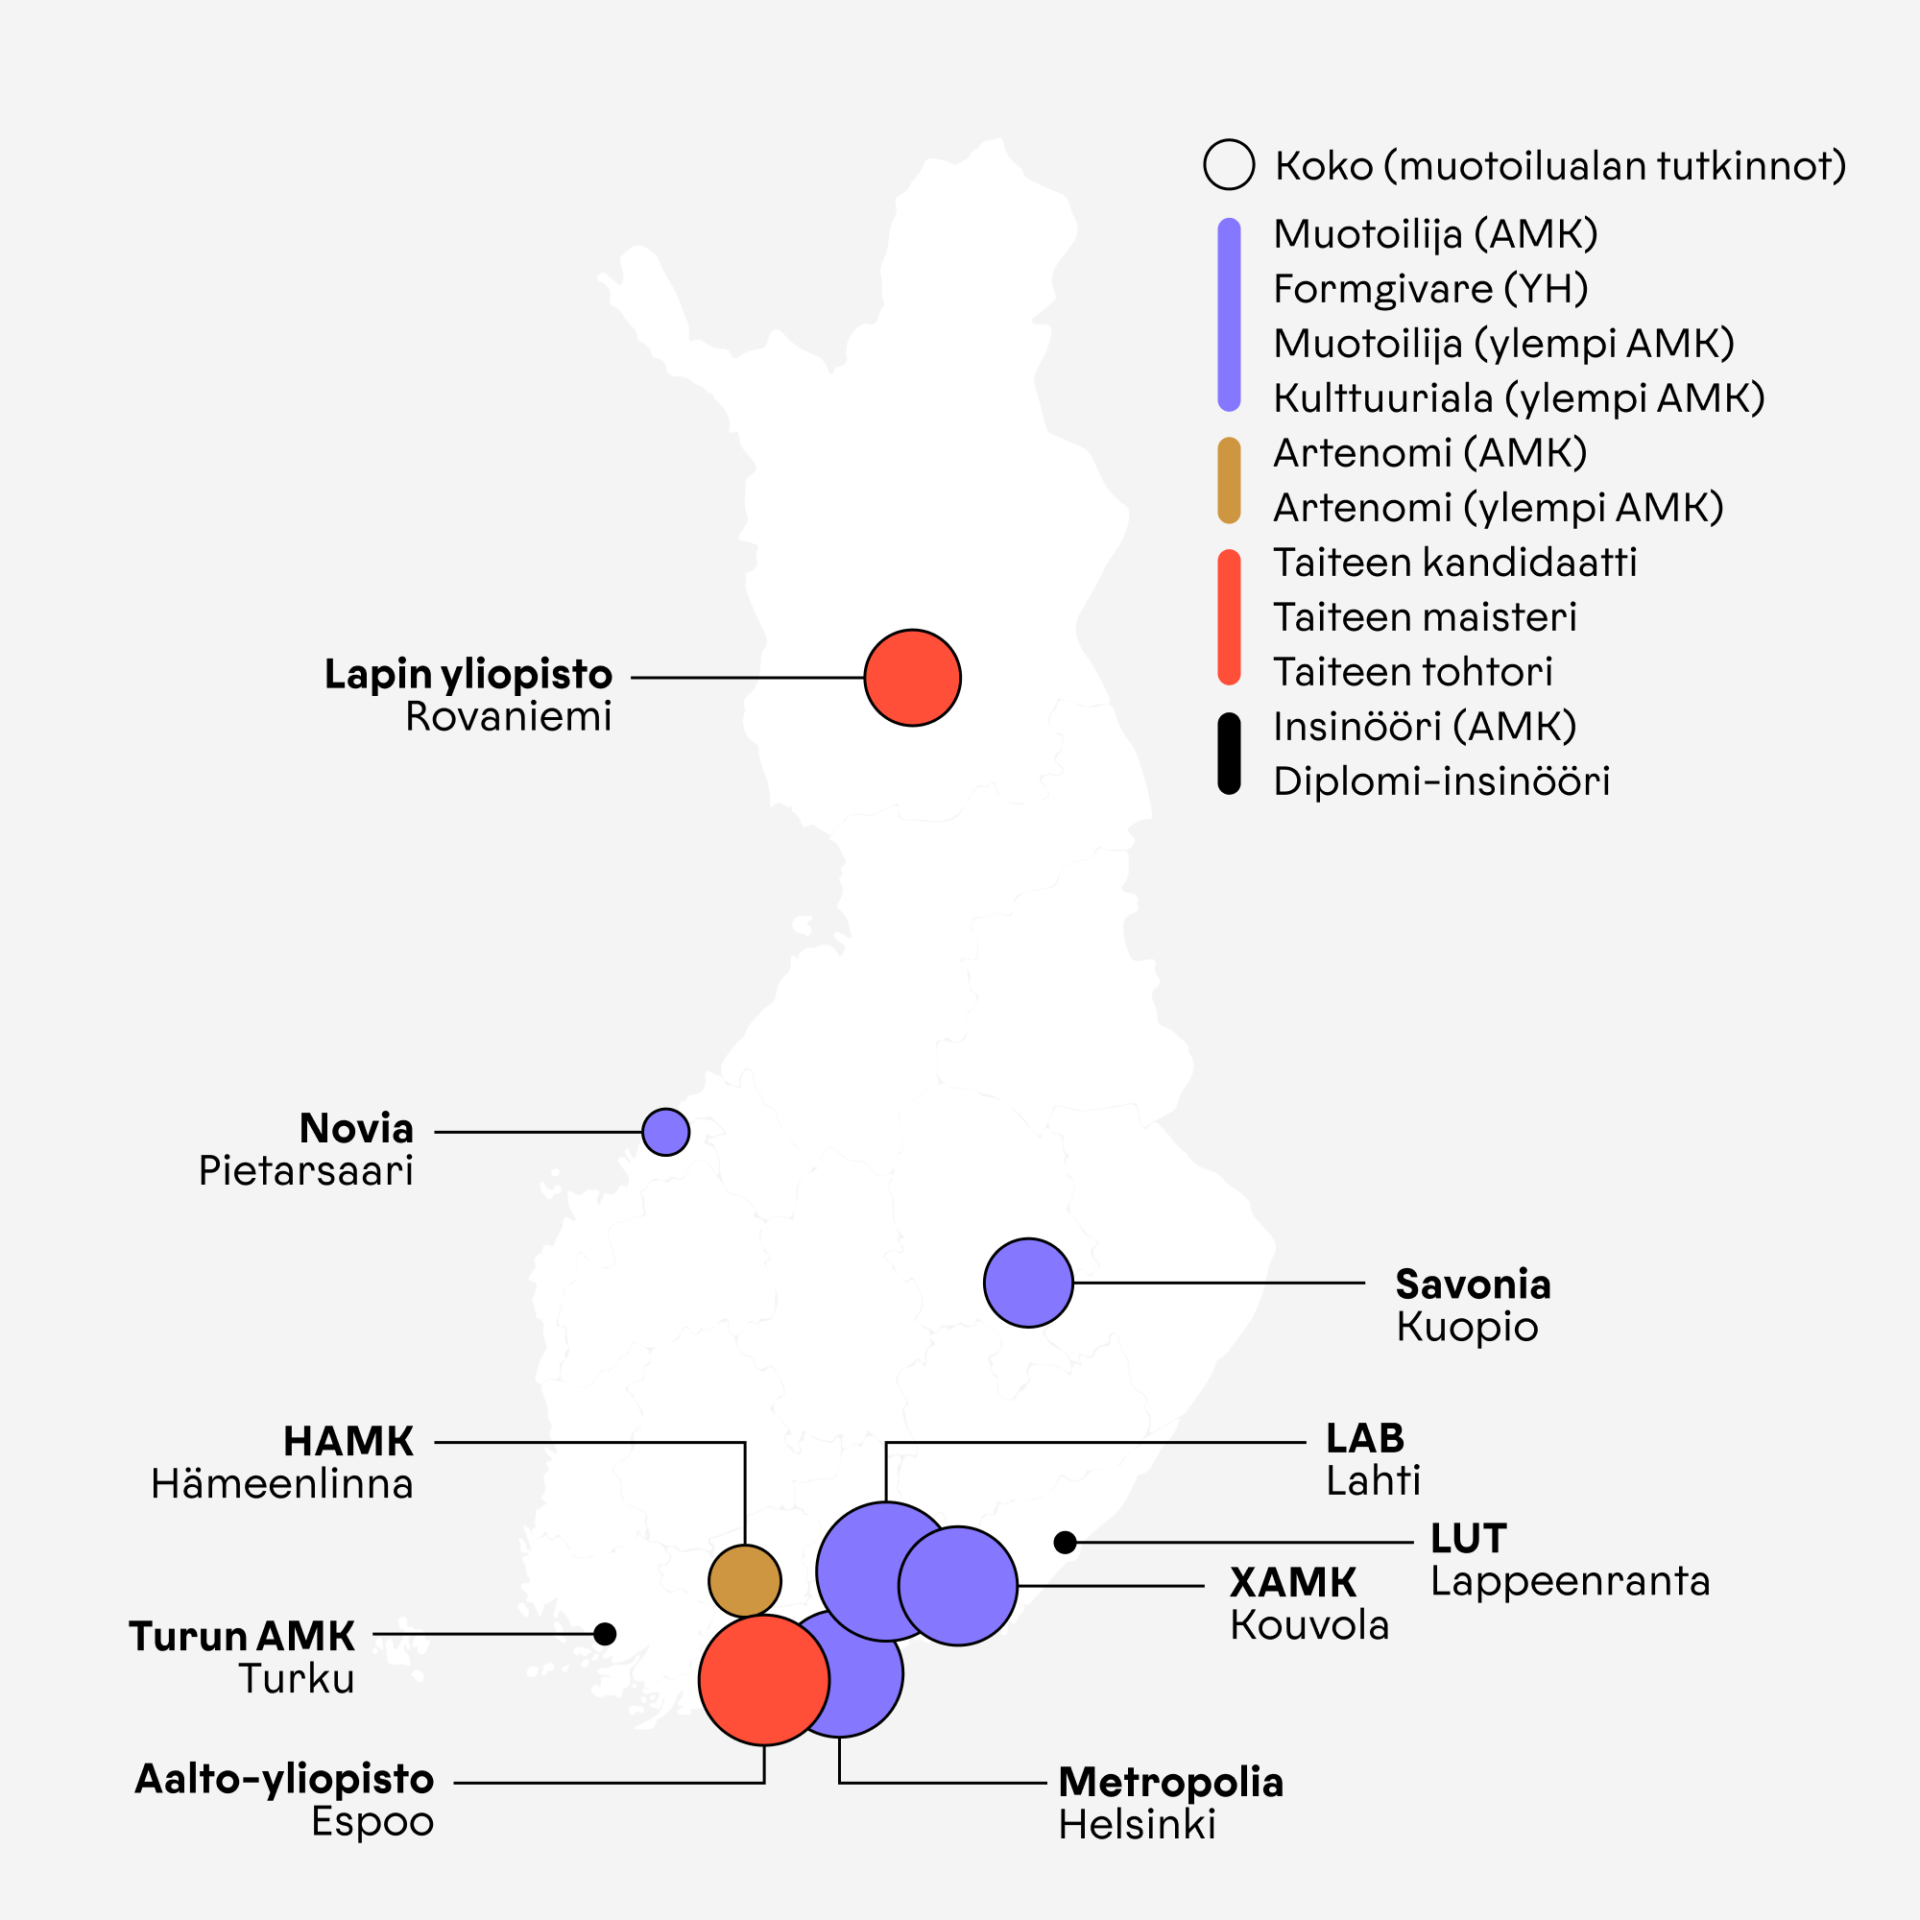 Suomen kartta, jossa osoitettu muotoilualan korkekaoulujen sijainnit ja niistä valmistuvien tutkintonimikkeet. Pallon koko ilmaisee muotoilun yksikön kokoa (muotoilun opiskelijoiden määrä). 